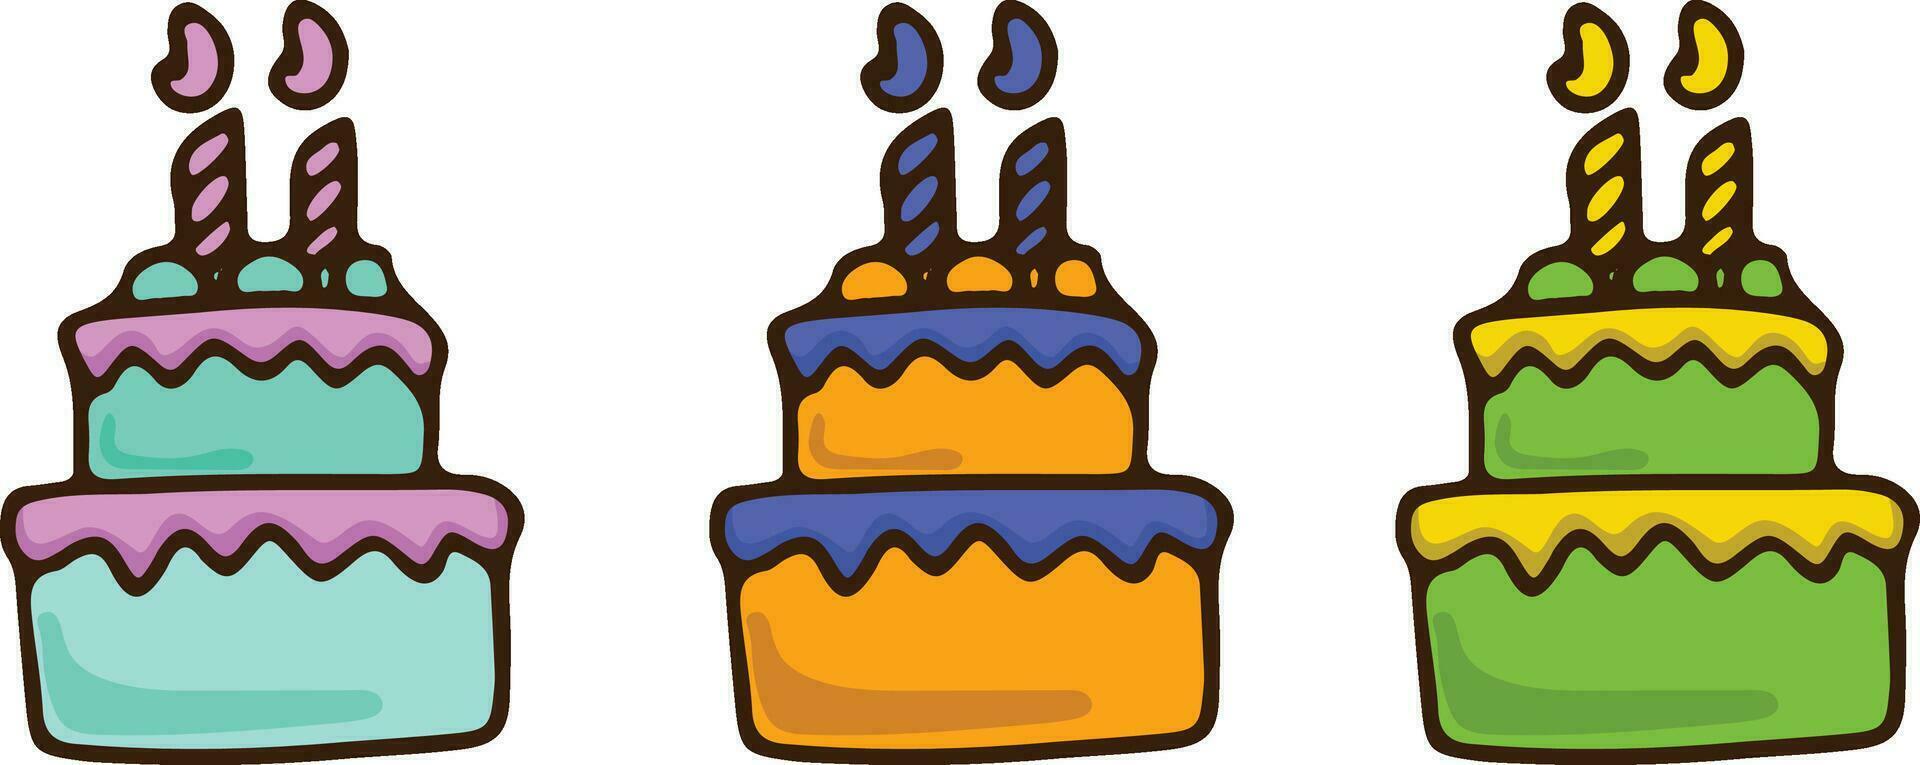 vector plano ilustración de un colección de cumpleaños pasteles, galletas, esponja pastel, crema pastel, de diferente colores y sabores